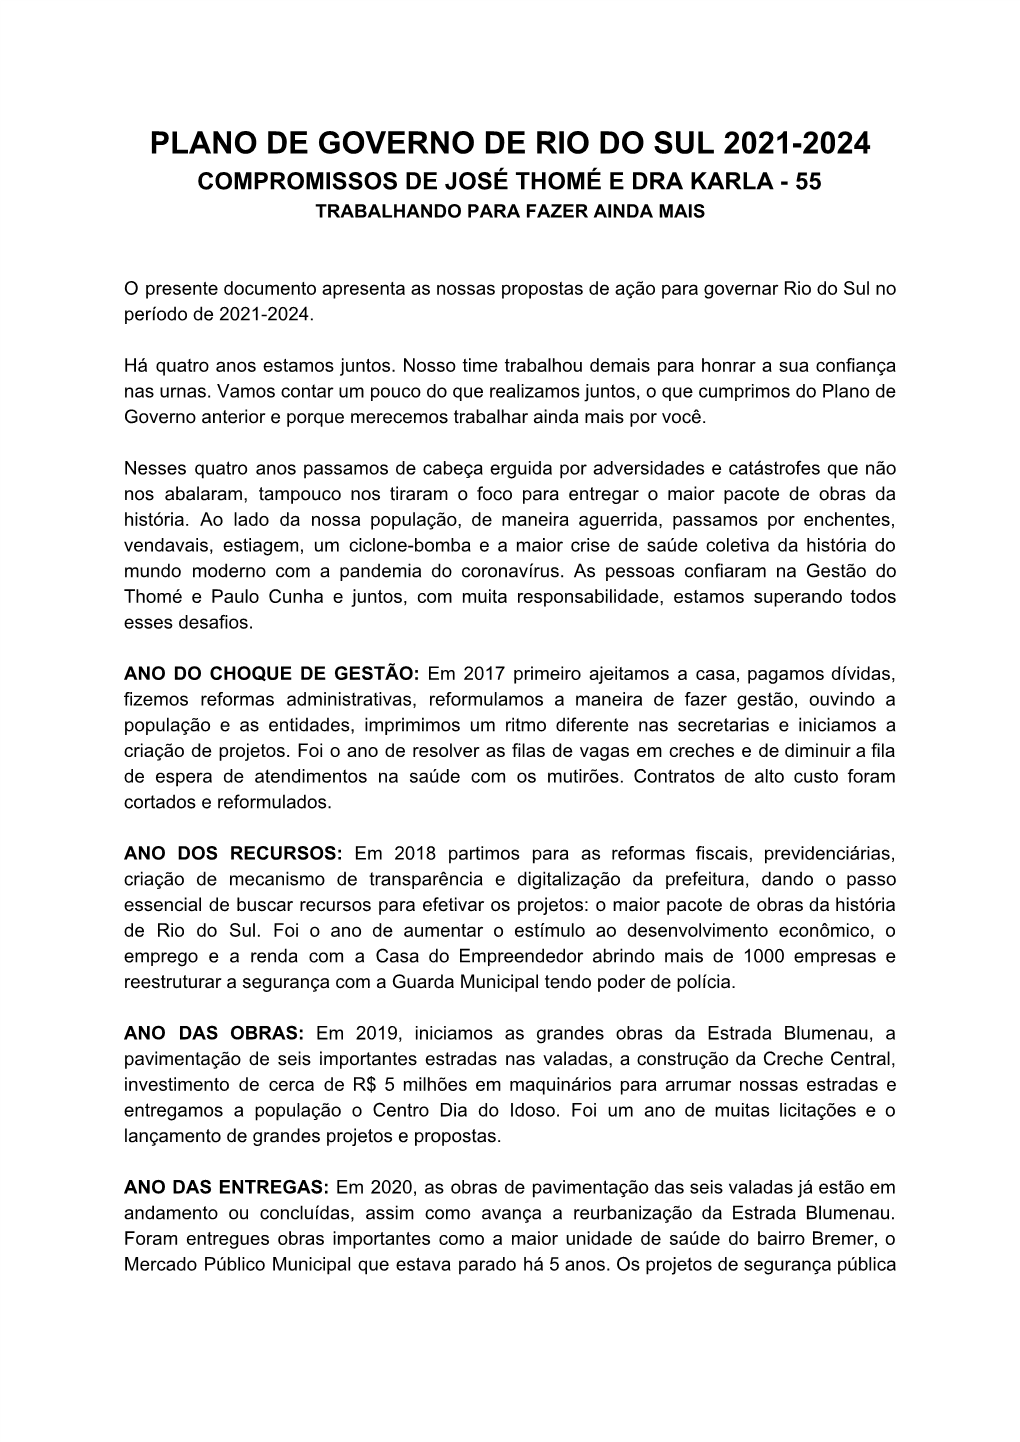 Plano De Governo De Rio Do Sul 2021-2024 Compromissos De José Thomé E Dra Karla - 55 Trabalhando Para Fazer Ainda Mais